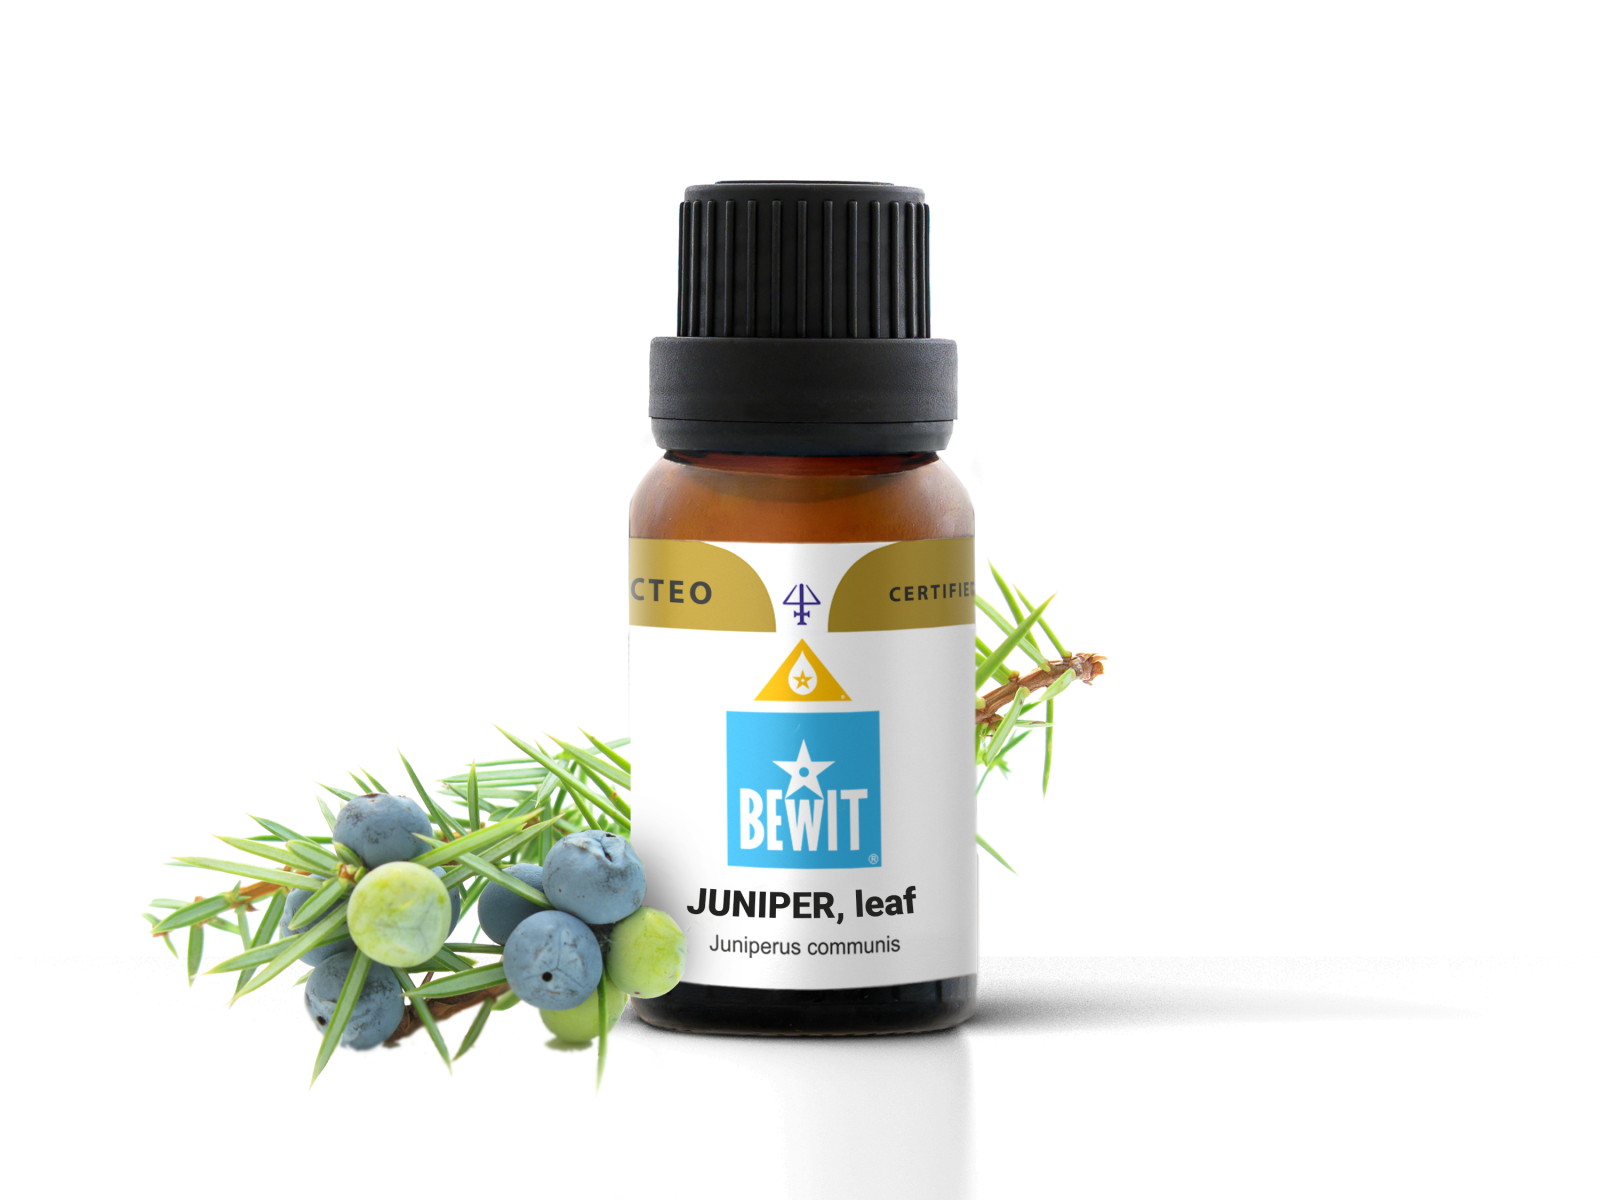 BEWIT Juniper, leaf - 100% pure essential oil